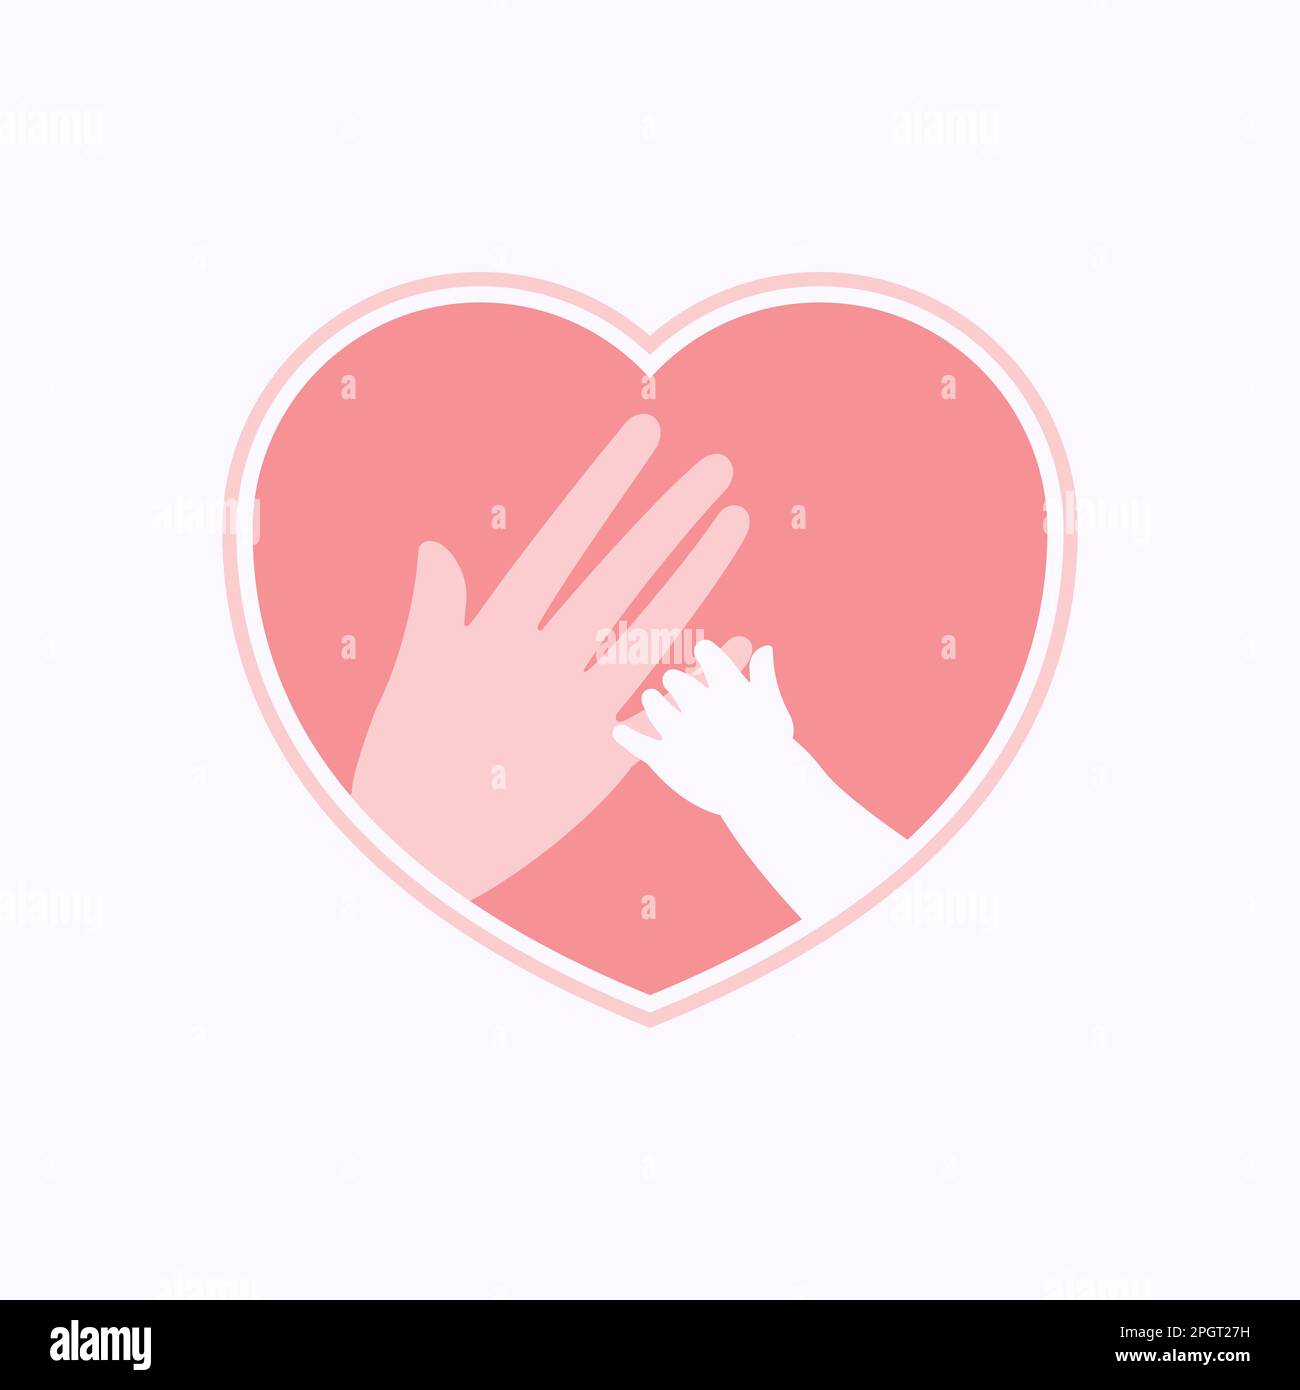 Kleine Hand, die den Finger einer großen Hand hält, repräsentiert Mutter und Baby in einer rosa, herzförmigen Silhouette Stock Vektor